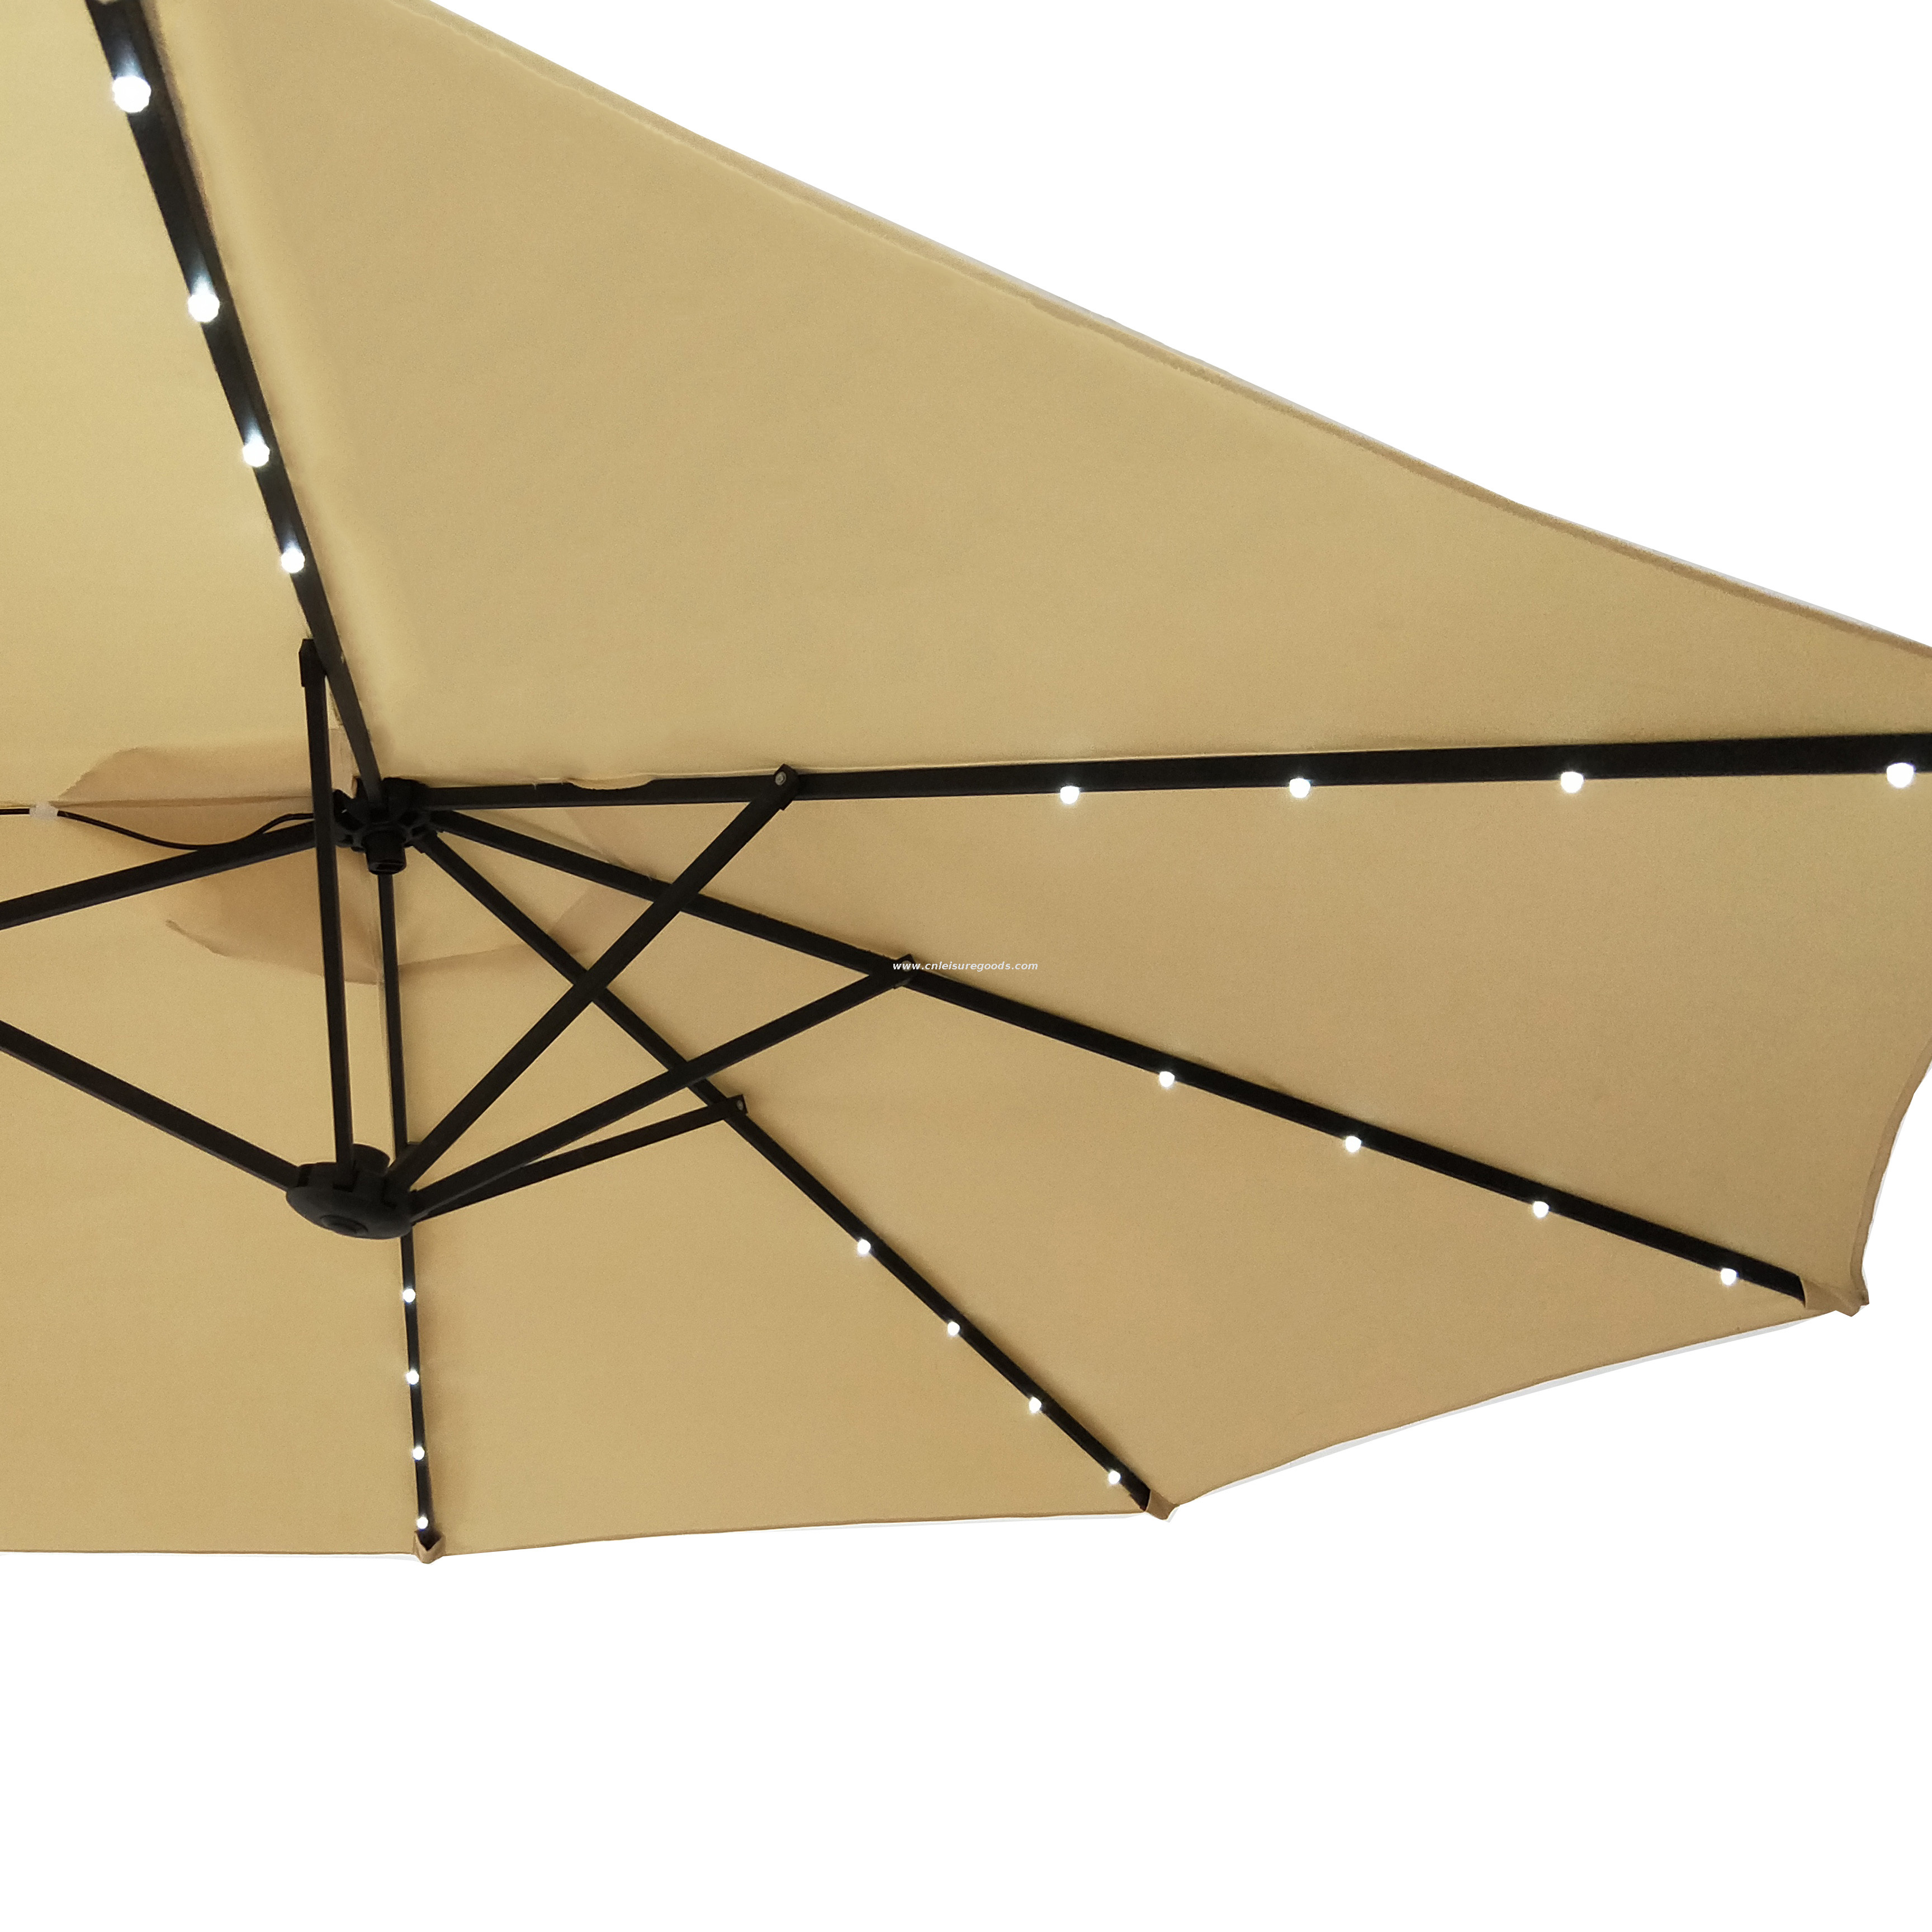 15ft Outdoor Sun Garden Parasol Umbrella Twin Patio Garden Double-Sided Umbrella Sunshade Umbrella Parasol